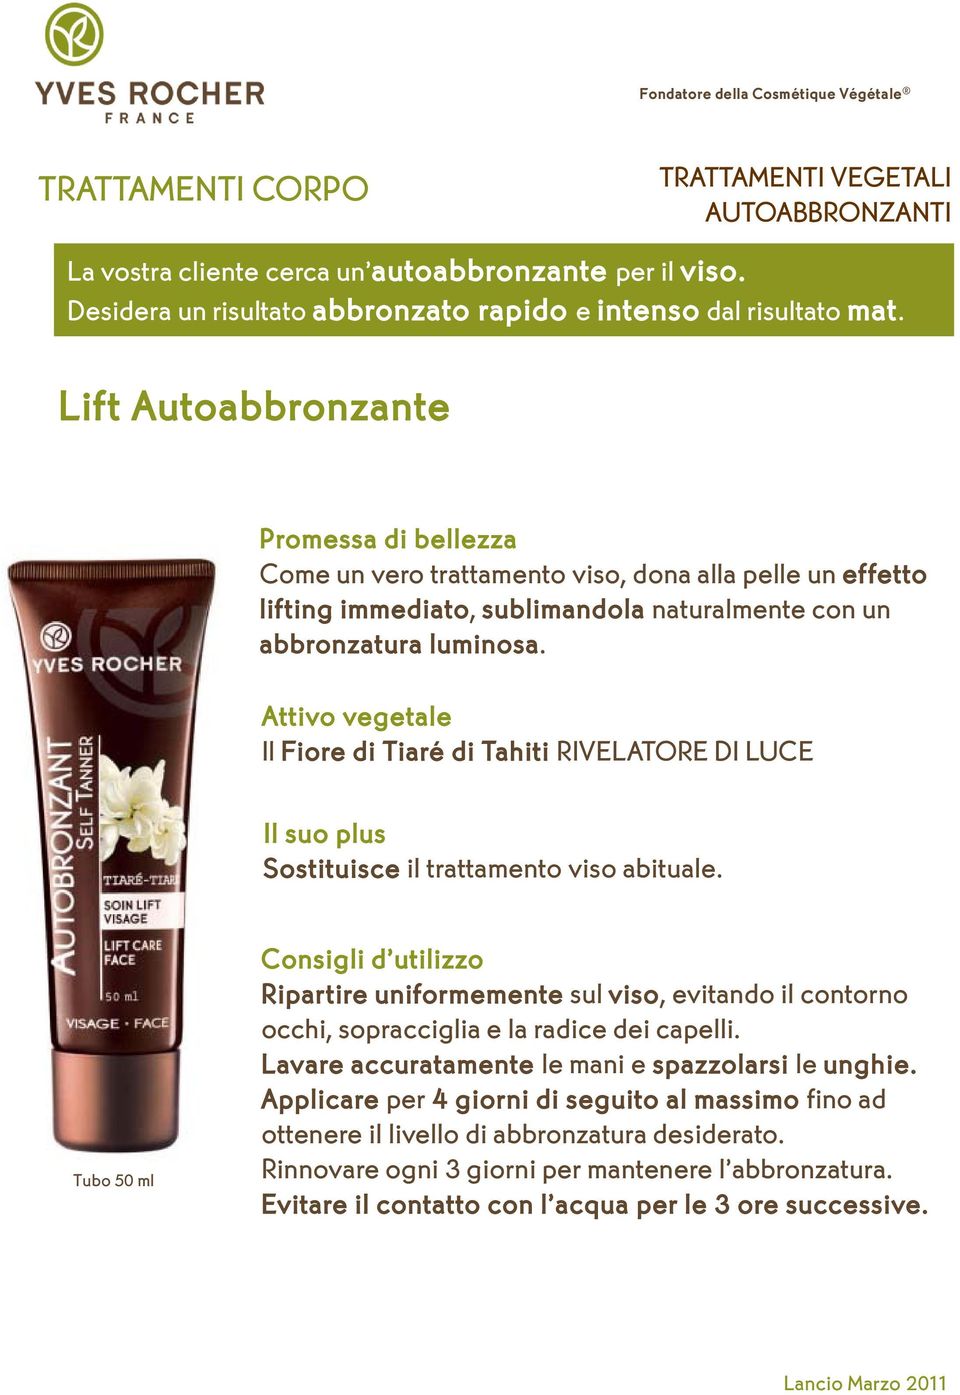 Lift Autoabbronzante Promessa di bellezza Come un vero trattamento viso, dona alla pelle un effetto lifting immediato, sublimandola naturalmente con un abbronzatura luminosa.